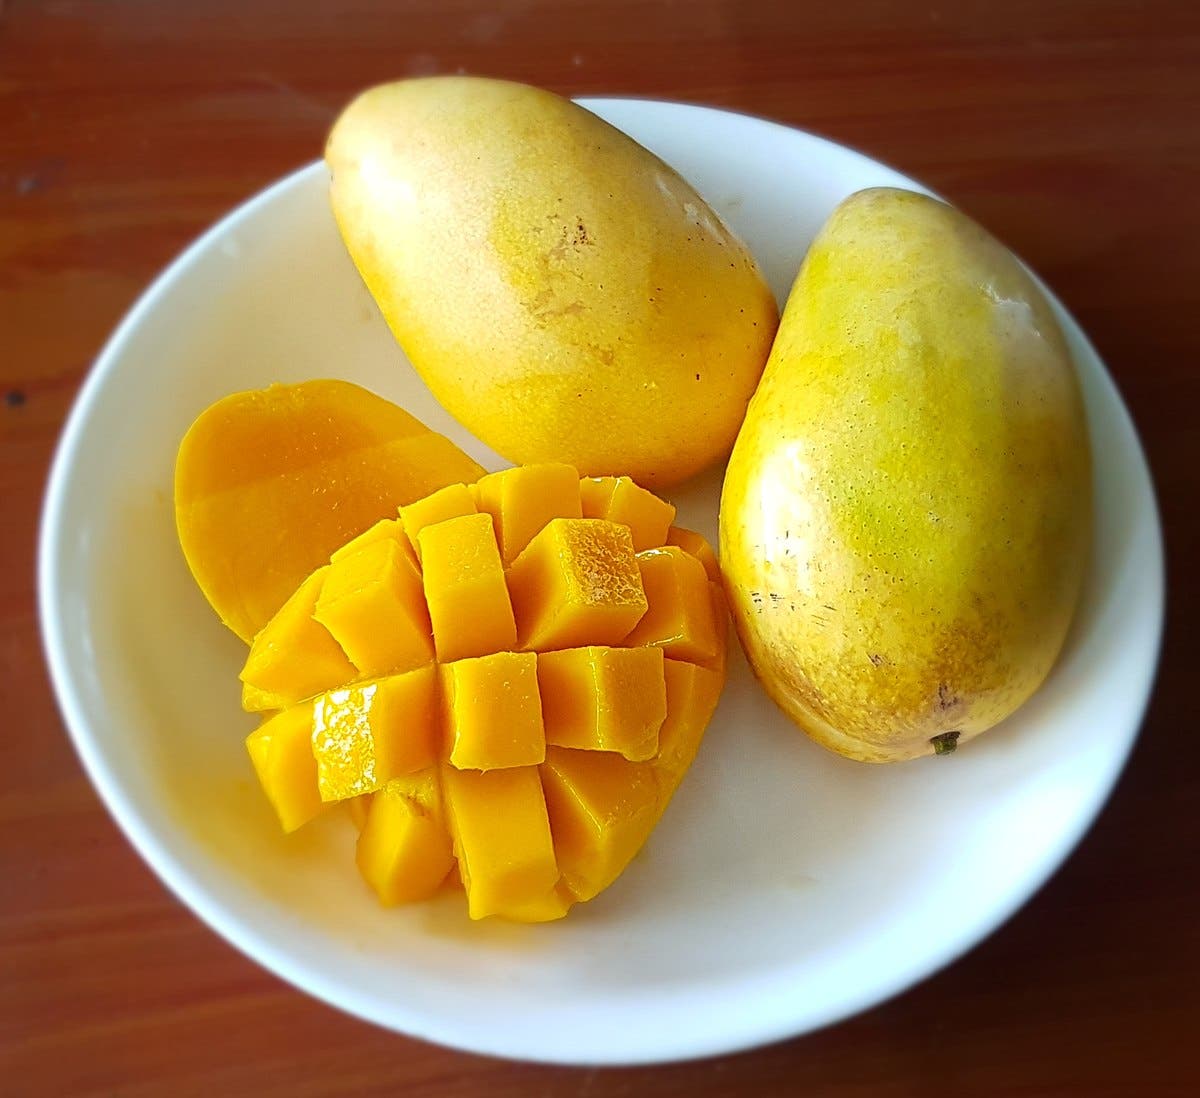 7 datos curiosos sobre los mangos que probablemente no sabías